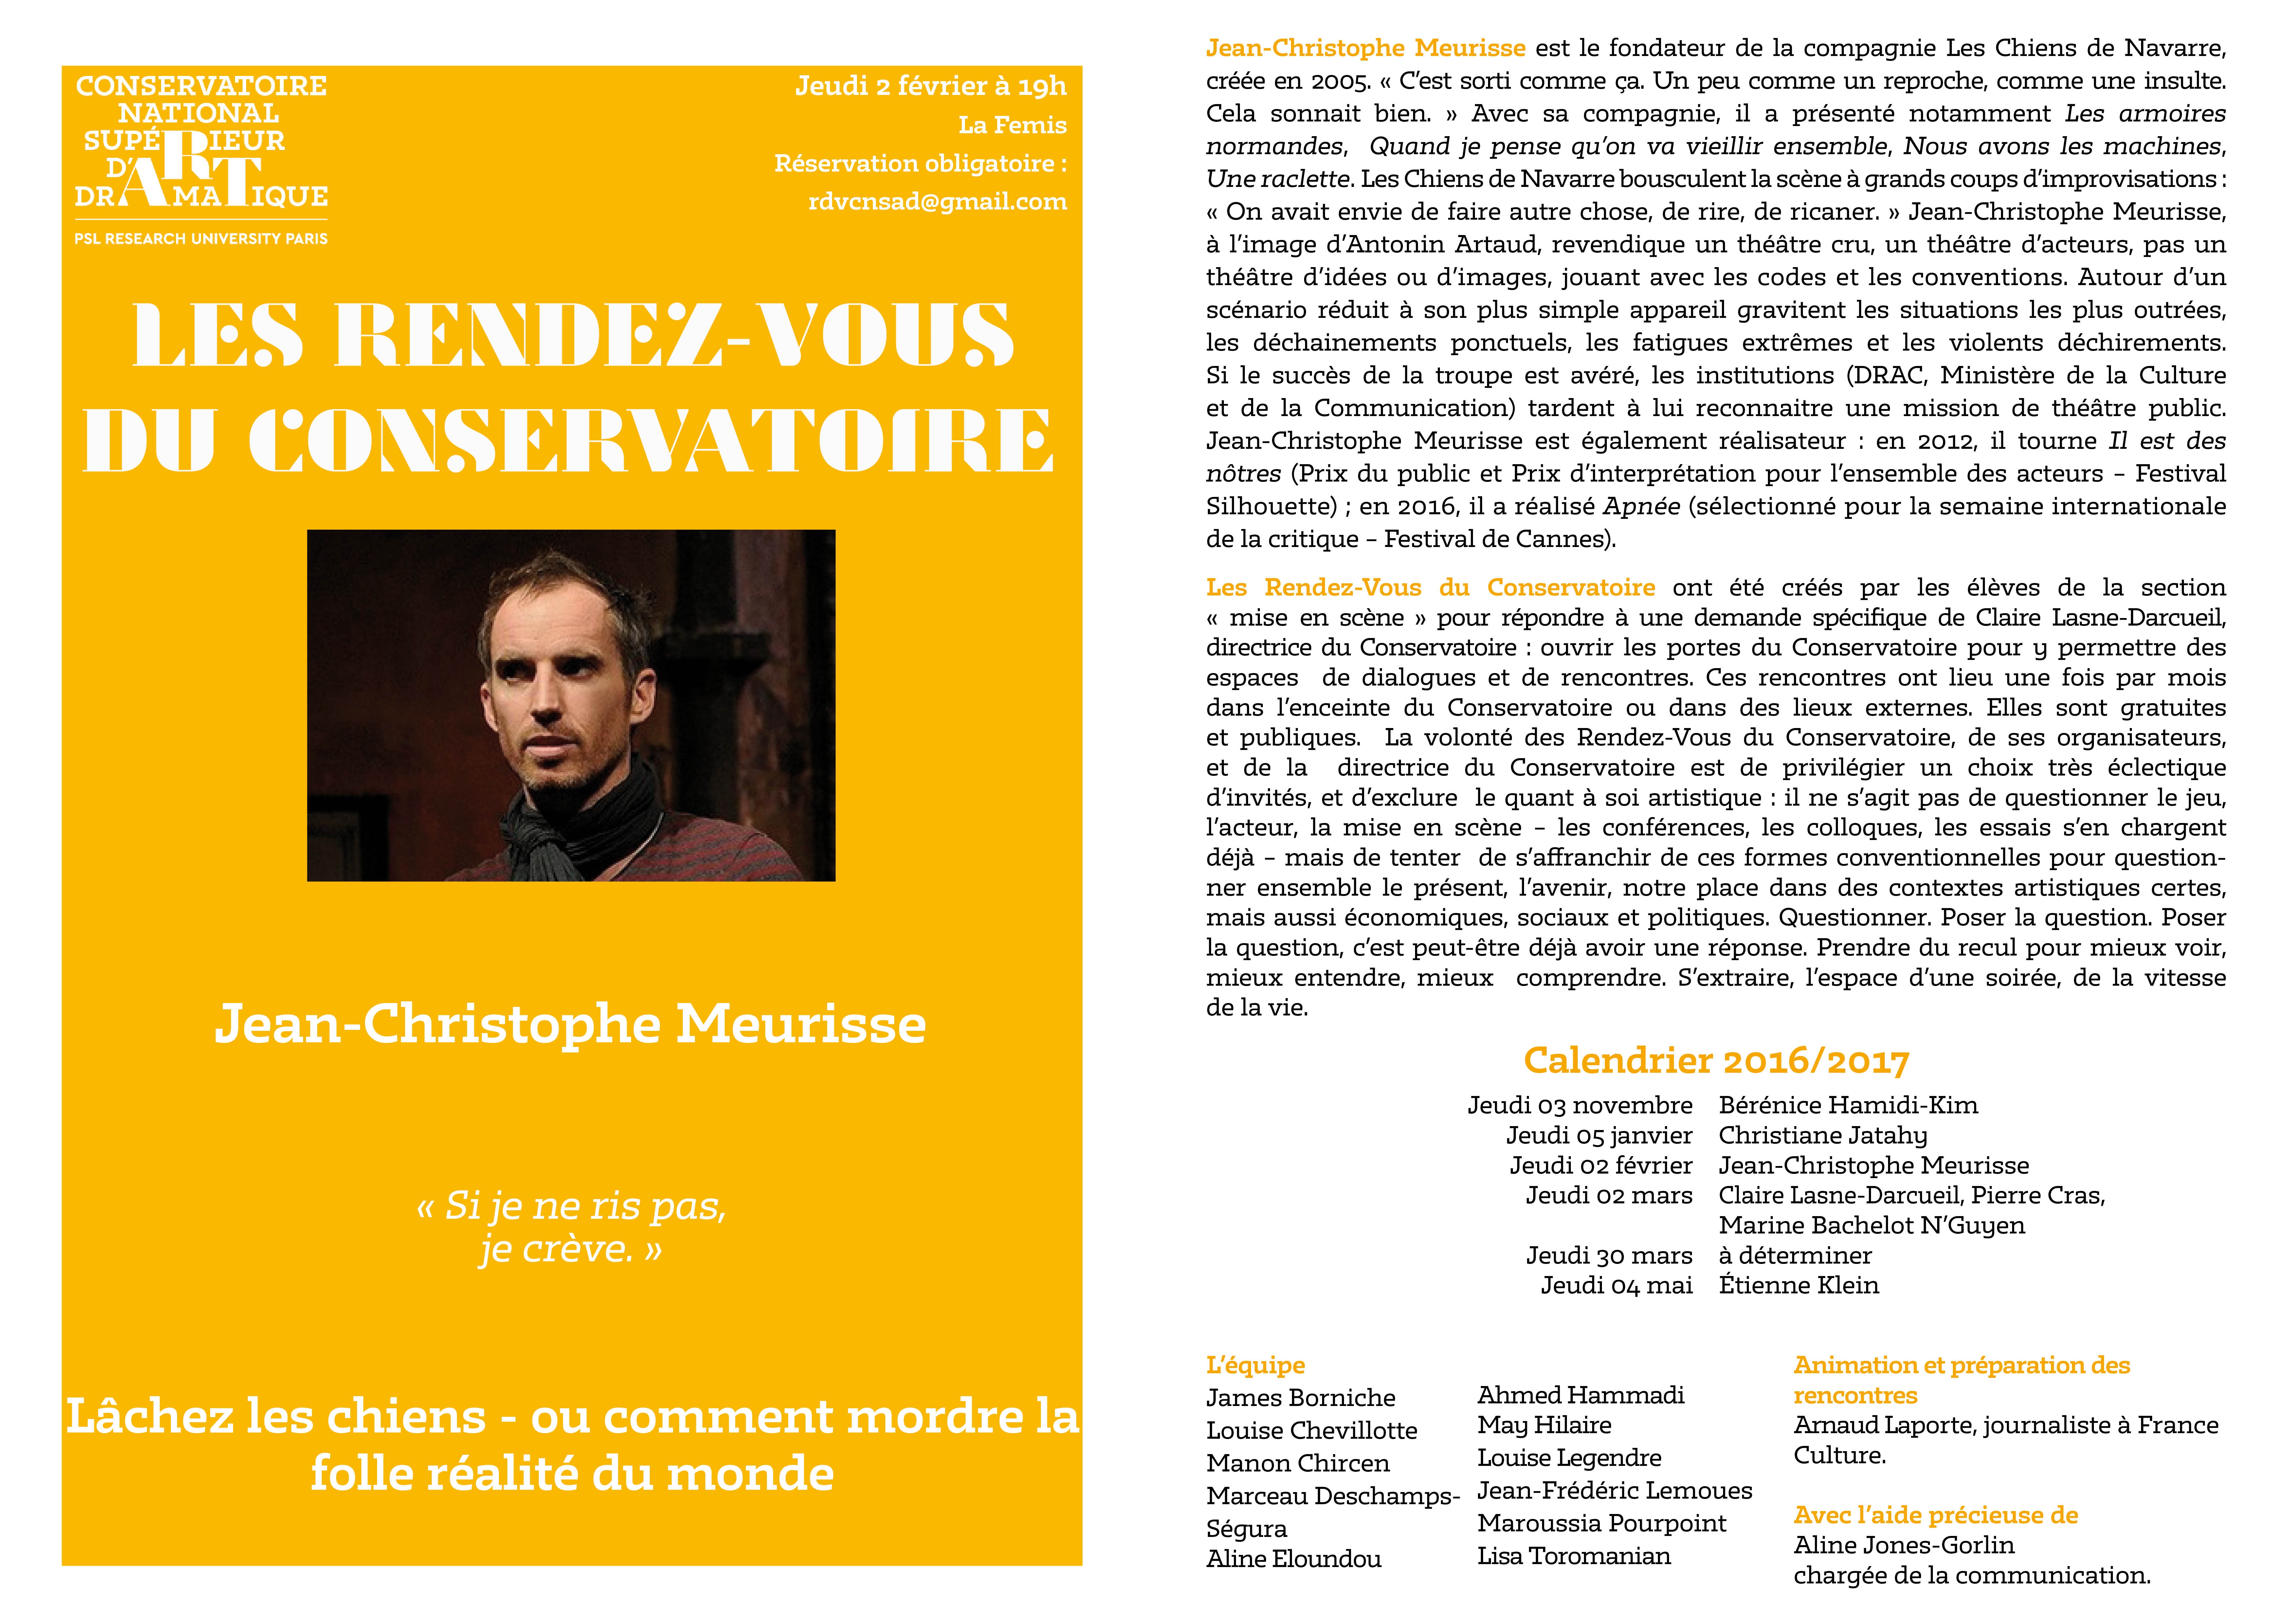 Rencontres du CNSAD: Jean-Christophe Meurisse le 2 février à 19h à la Fémis